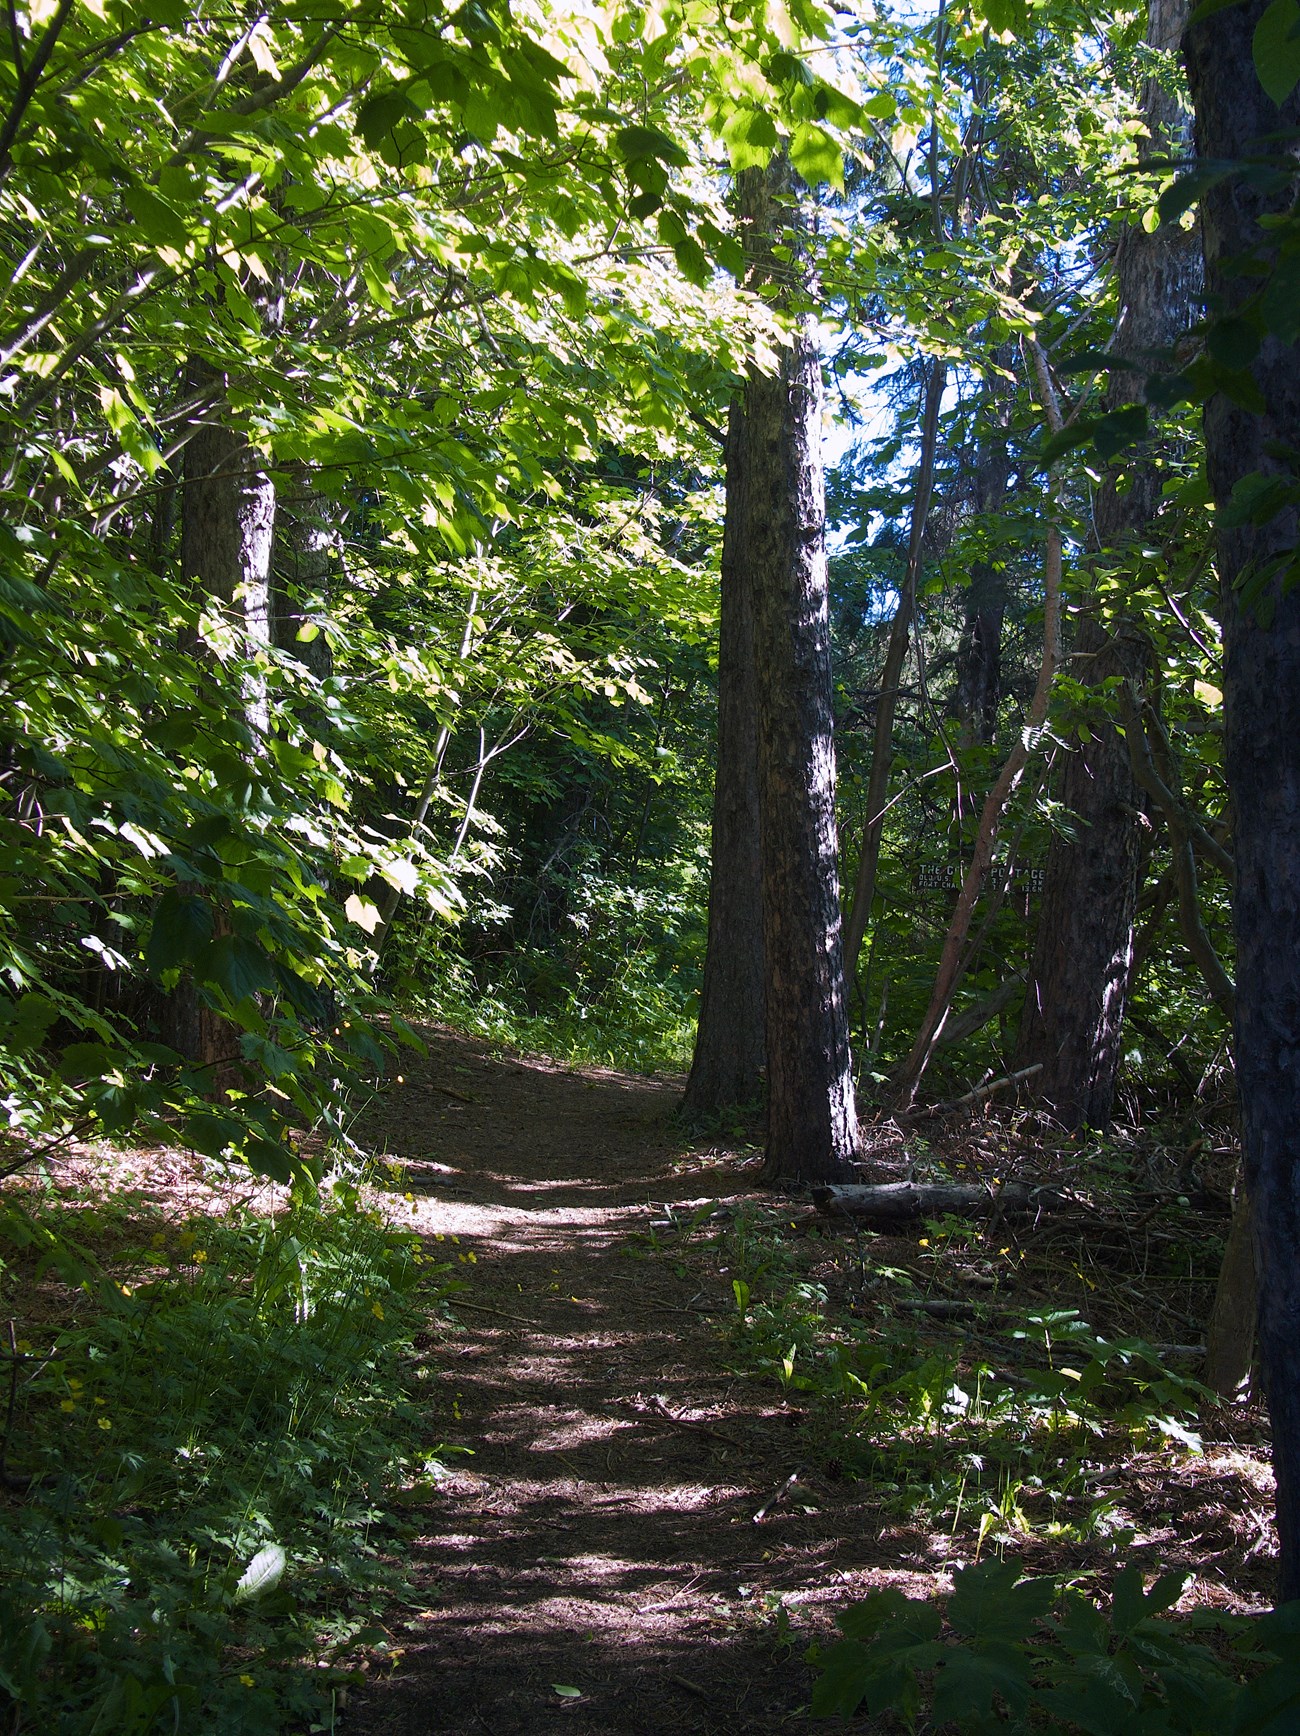 Trail through trees